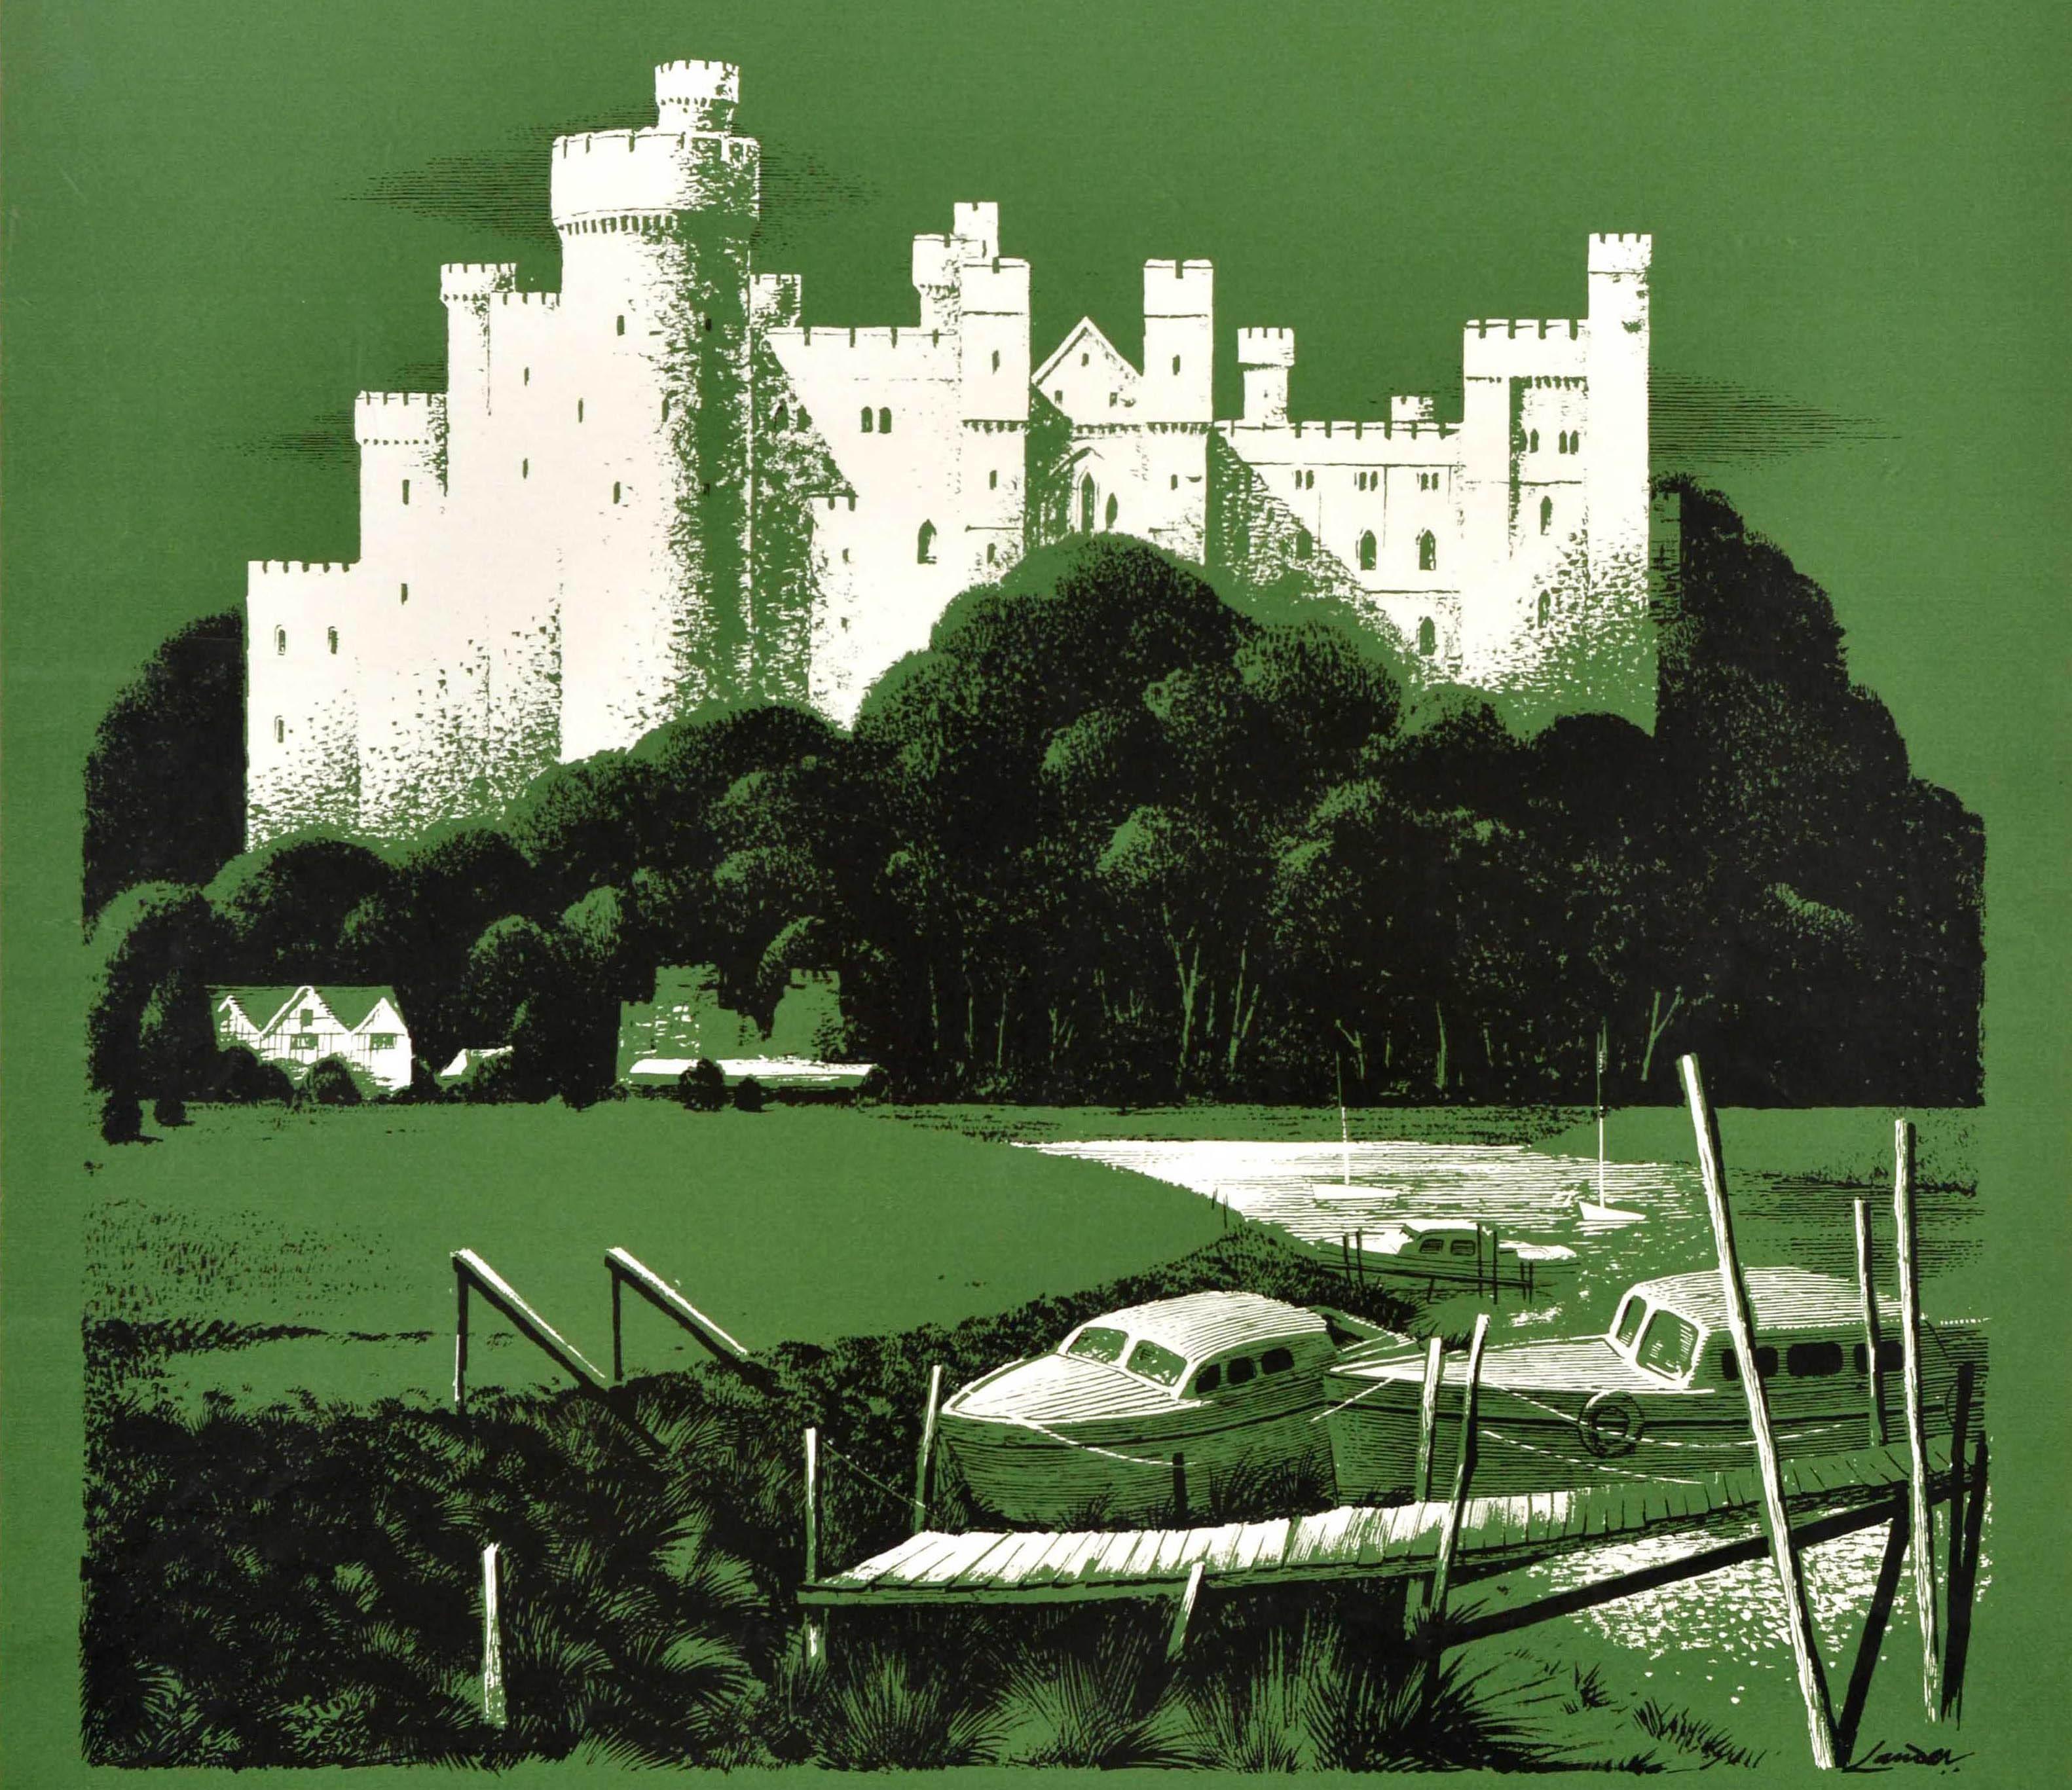 Affiche originale de voyage en train - Visit Arundel Castle - réalisée par le célèbre artiste commercial et créateur d'affiches Reginald Montague Lander (1913-1980) représentant le château historique d'Arundel, datant du XIe siècle et situé dans le